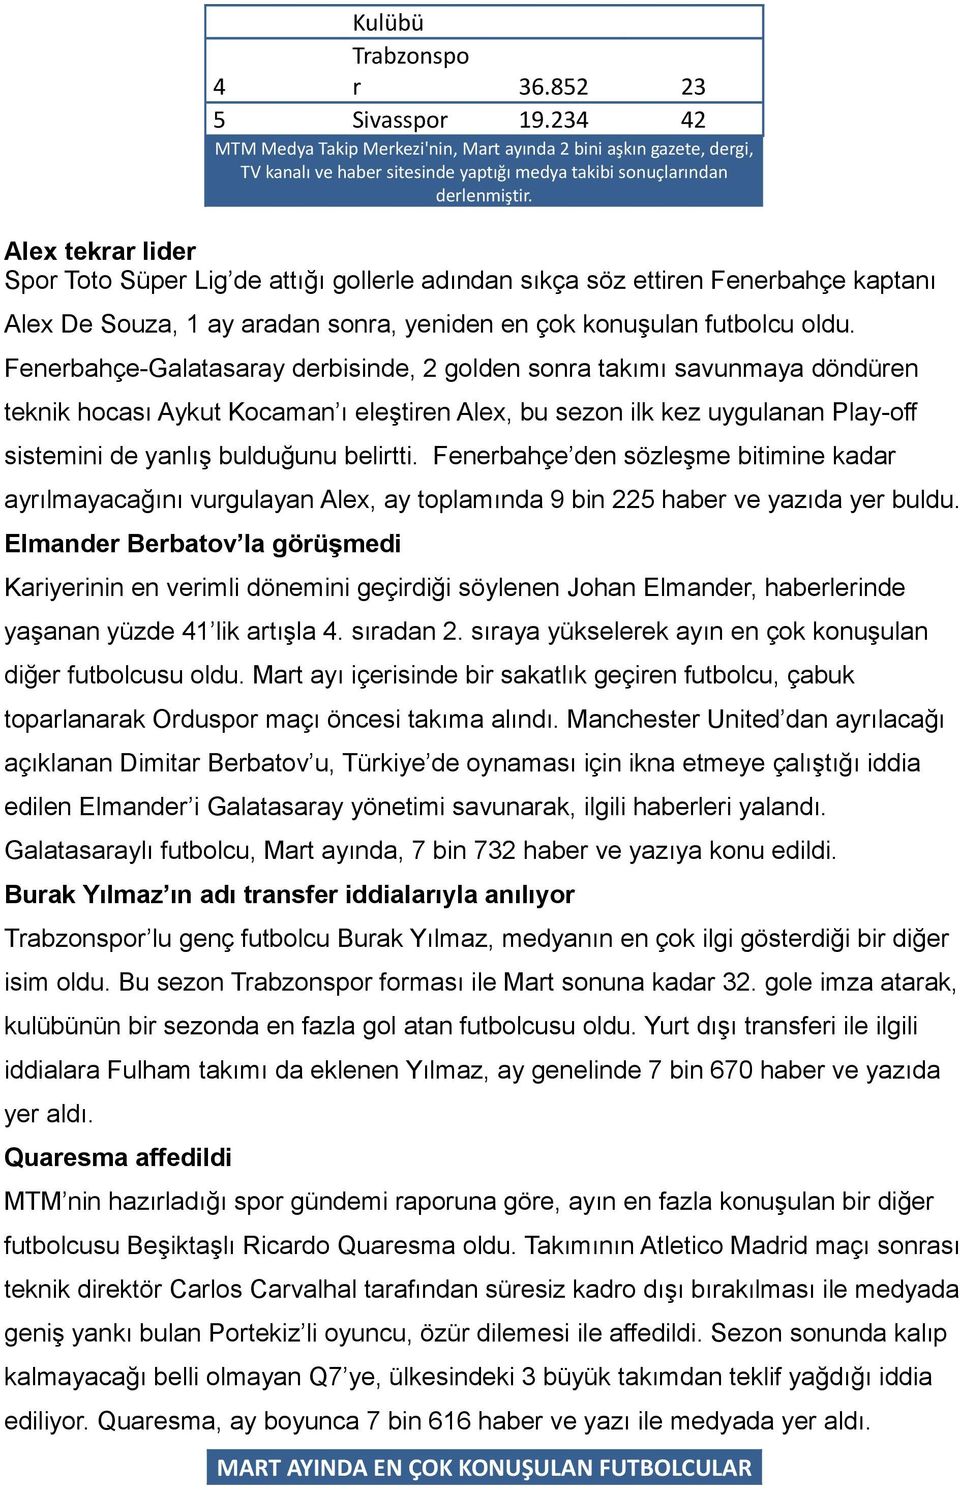 Fenerbahçe-Galatasaray derbisinde, 2 golden sonra takımı savunmaya döndüren teknik hocası Aykut Kocaman ı eleştiren Alex, bu sezon ilk kez uygulanan Play-off sistemini de yanlış bulduğunu belirtti.